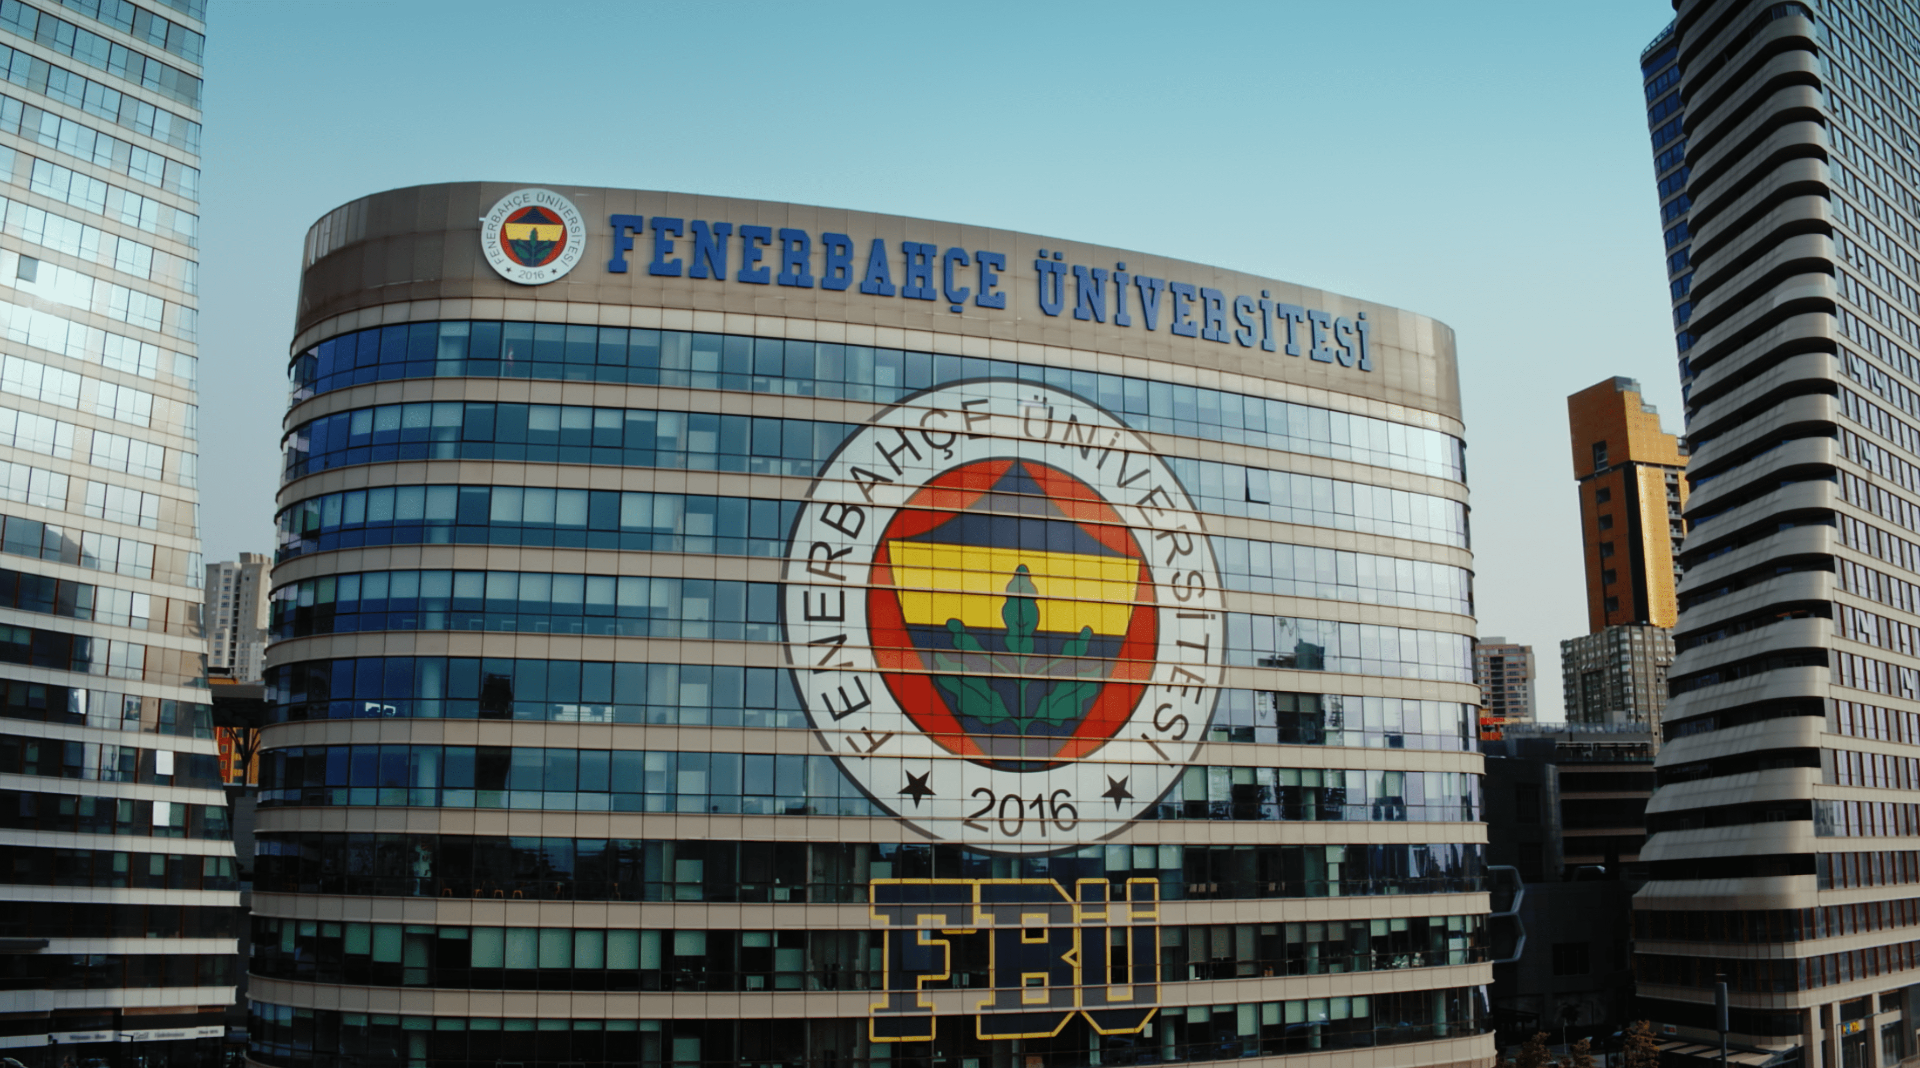 Fenerbahçe Üniversitesi Öğretim Üyesi alım ilanı